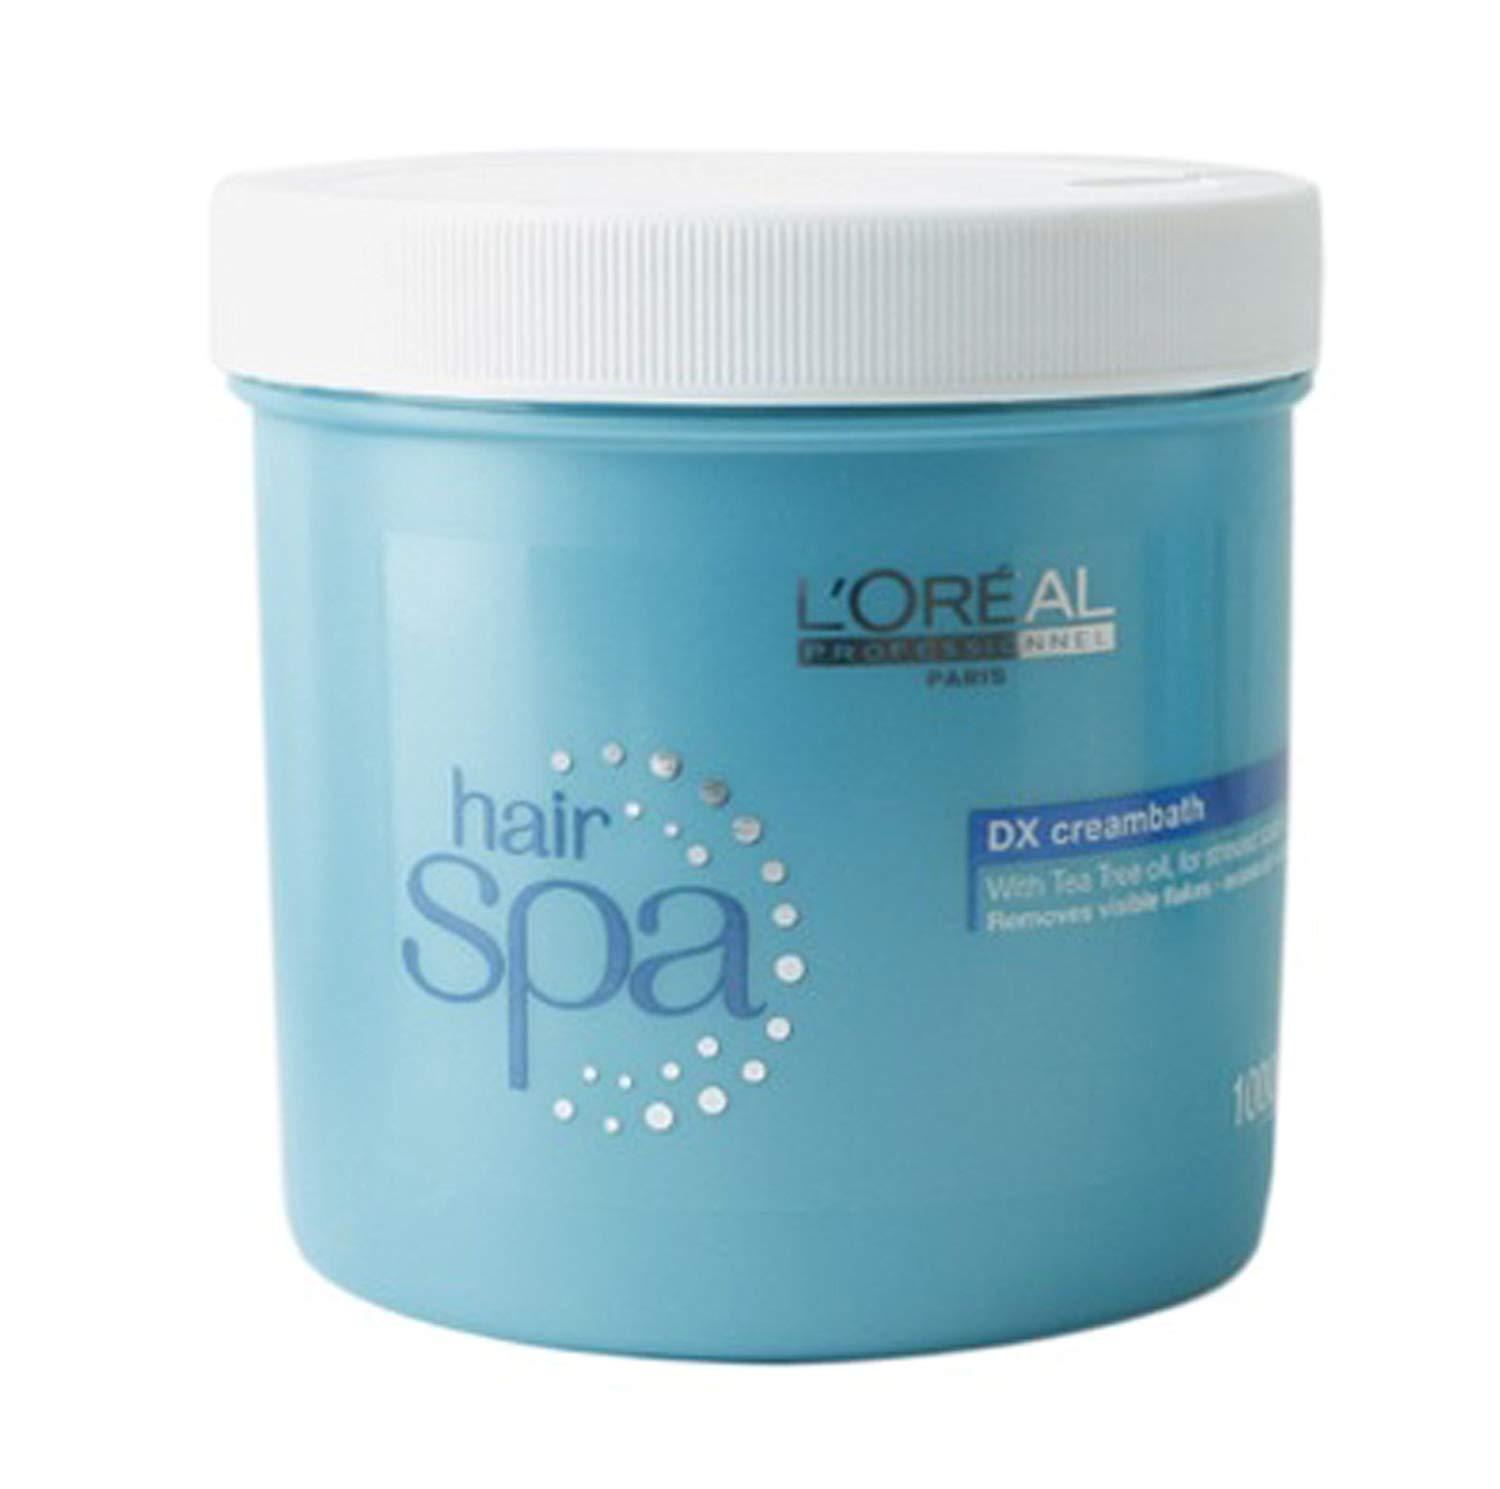 แนะนำ Loreal Hair Spa (Detoxifying) Creambath 1000 ml ลอรีอัล โปรเฟสชั่นแนล แฮร์สปา ทรีทเม้นต์ หมักผม-อบไอน้ำ **ดีท็อกซิฟายอิ้ง** ครีมบาธ 1000ml